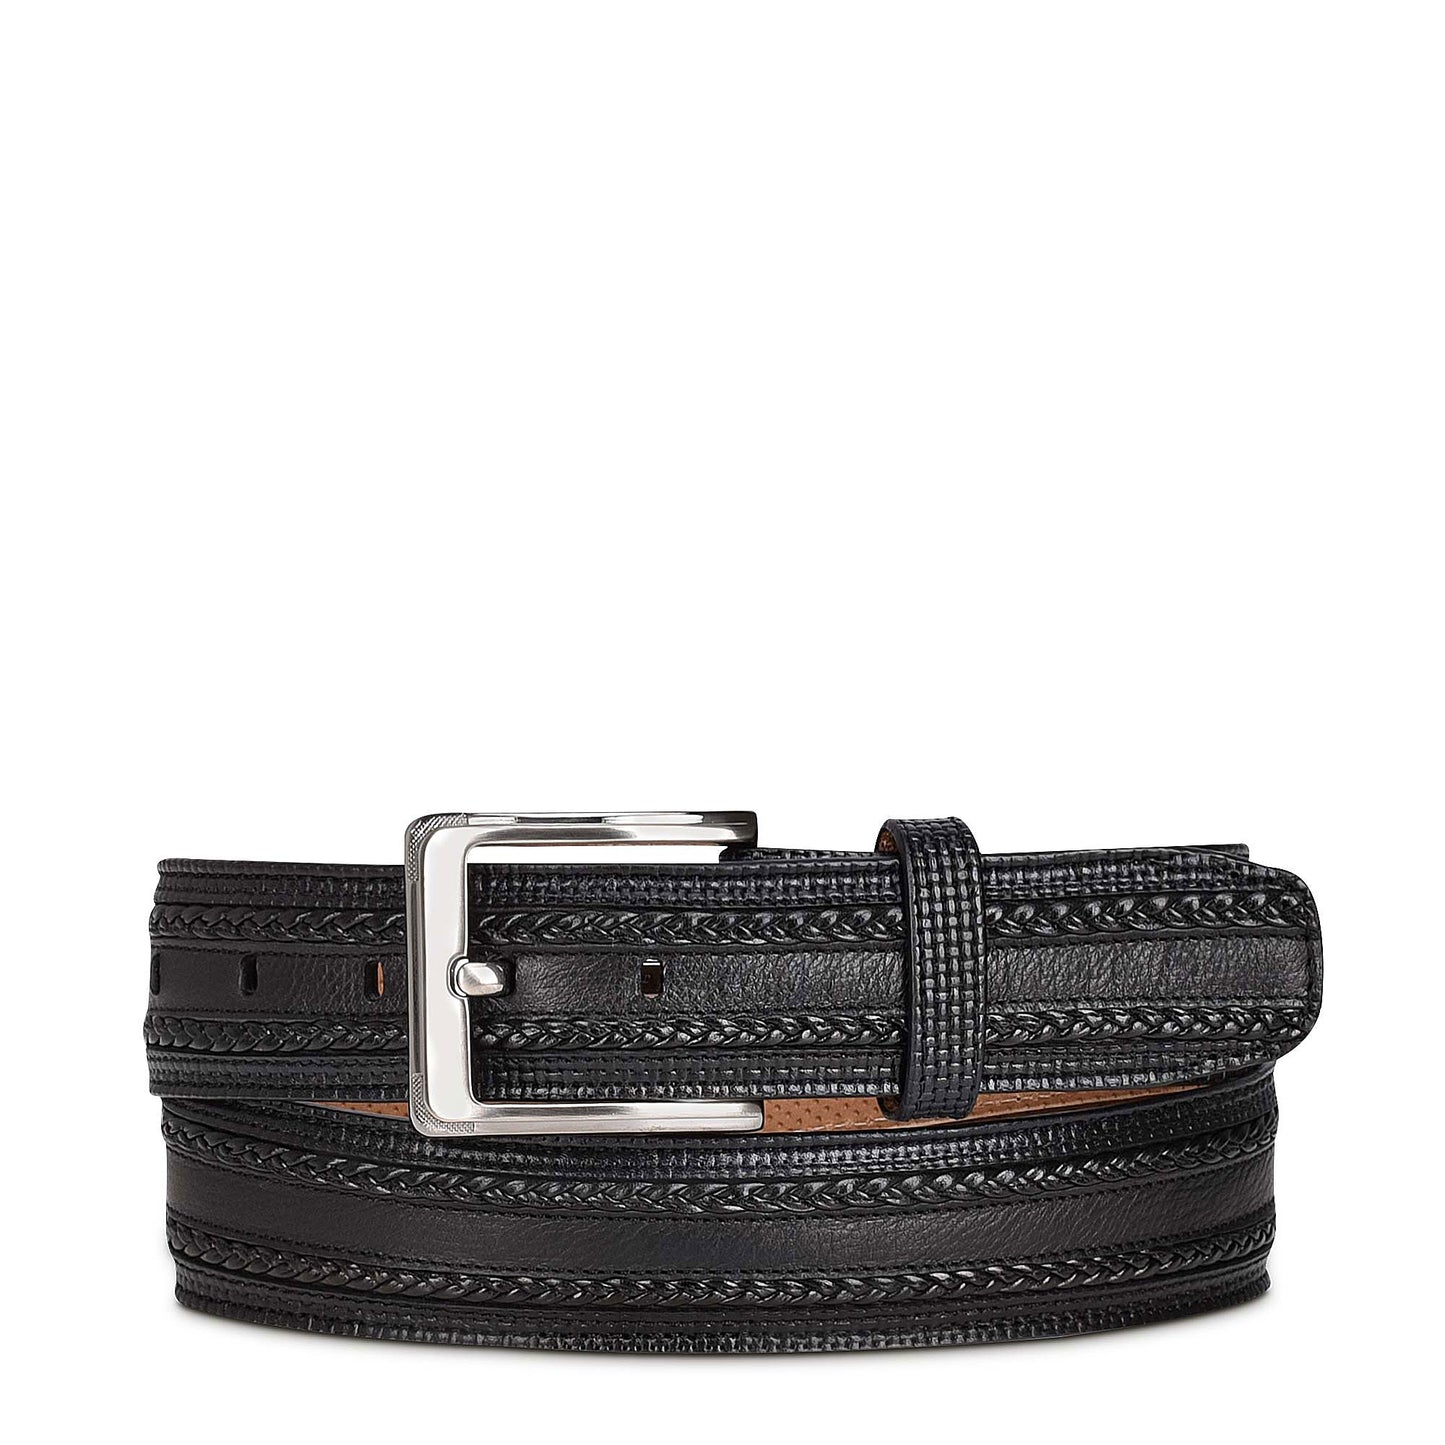 Engraved black dress leather belt